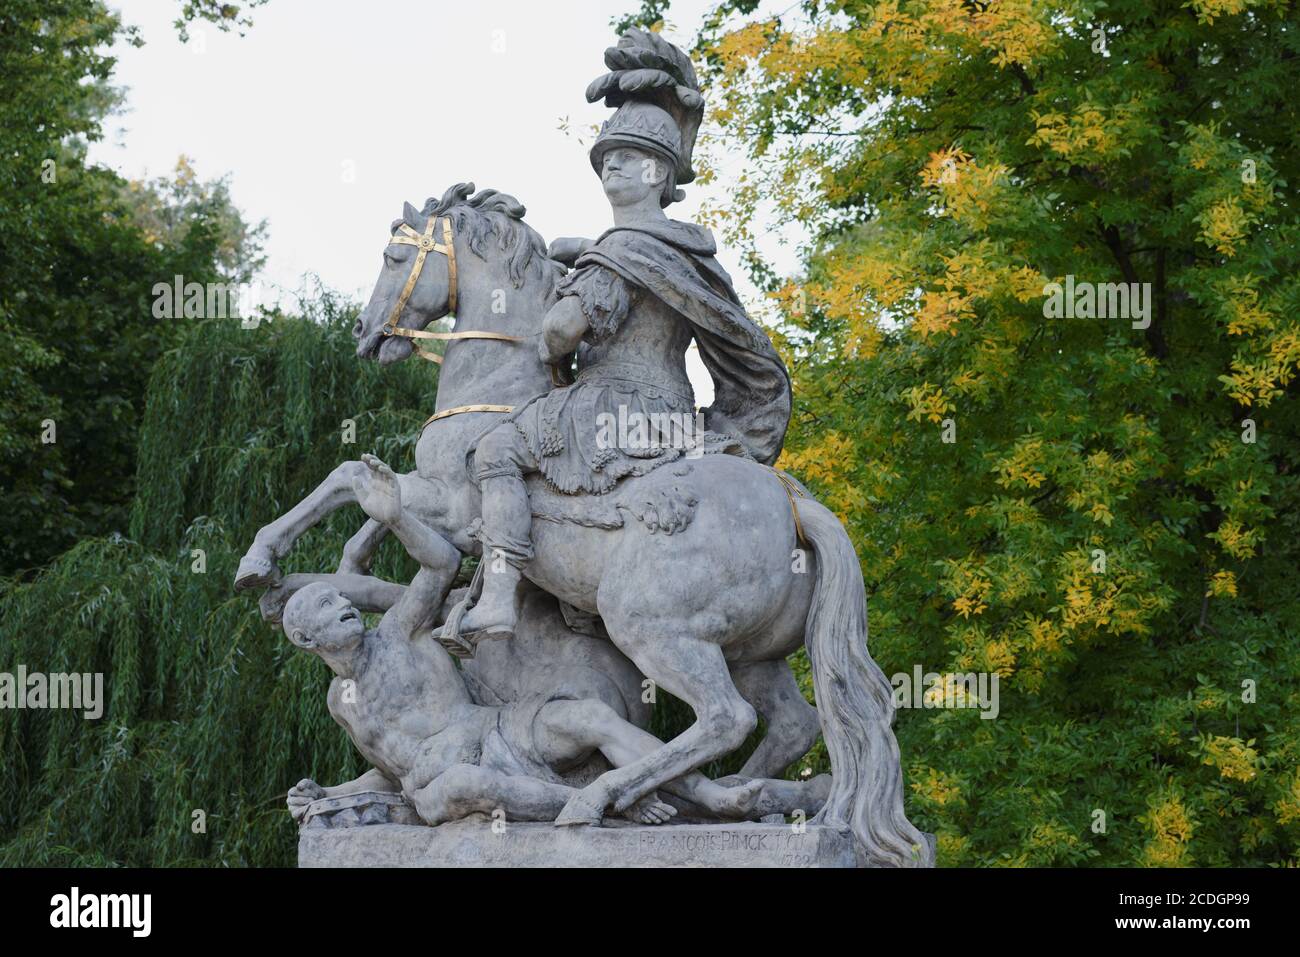 Monument to king John III Sobieski in Royal Baths park, Warsaw, Poland Stock Photo